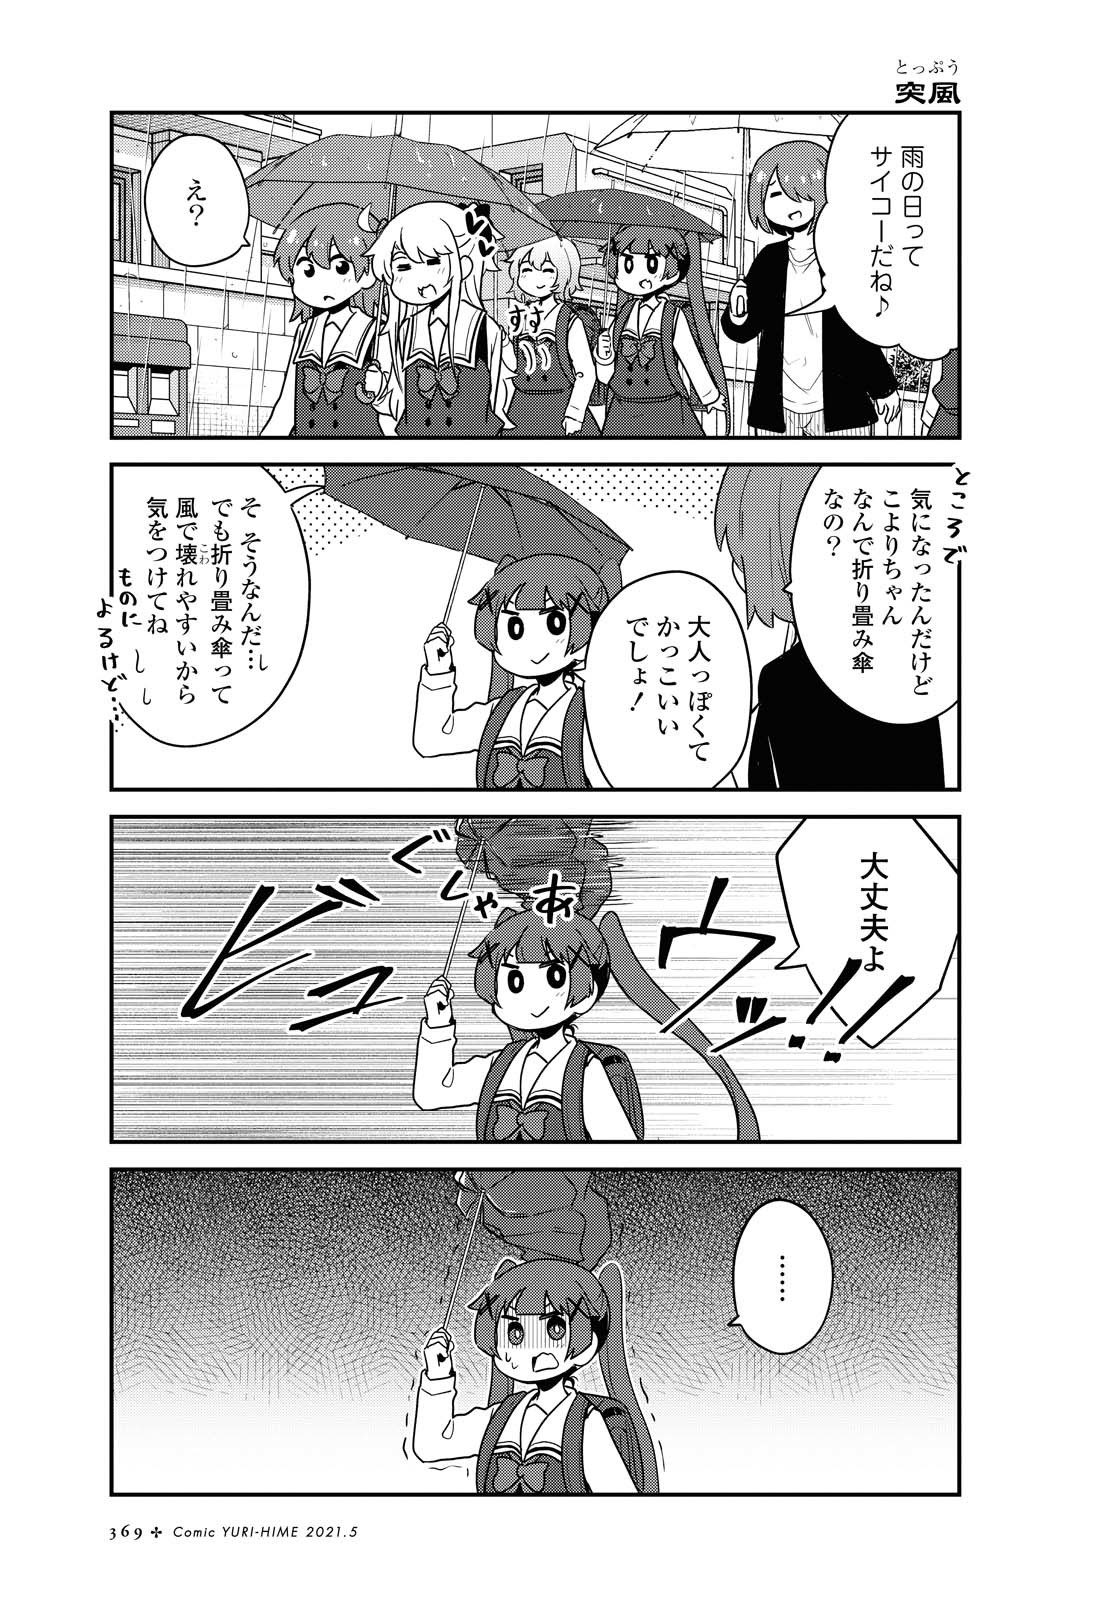 Watashi ni Tenshi ga Maiorita! - Chapter 79 - Page 13